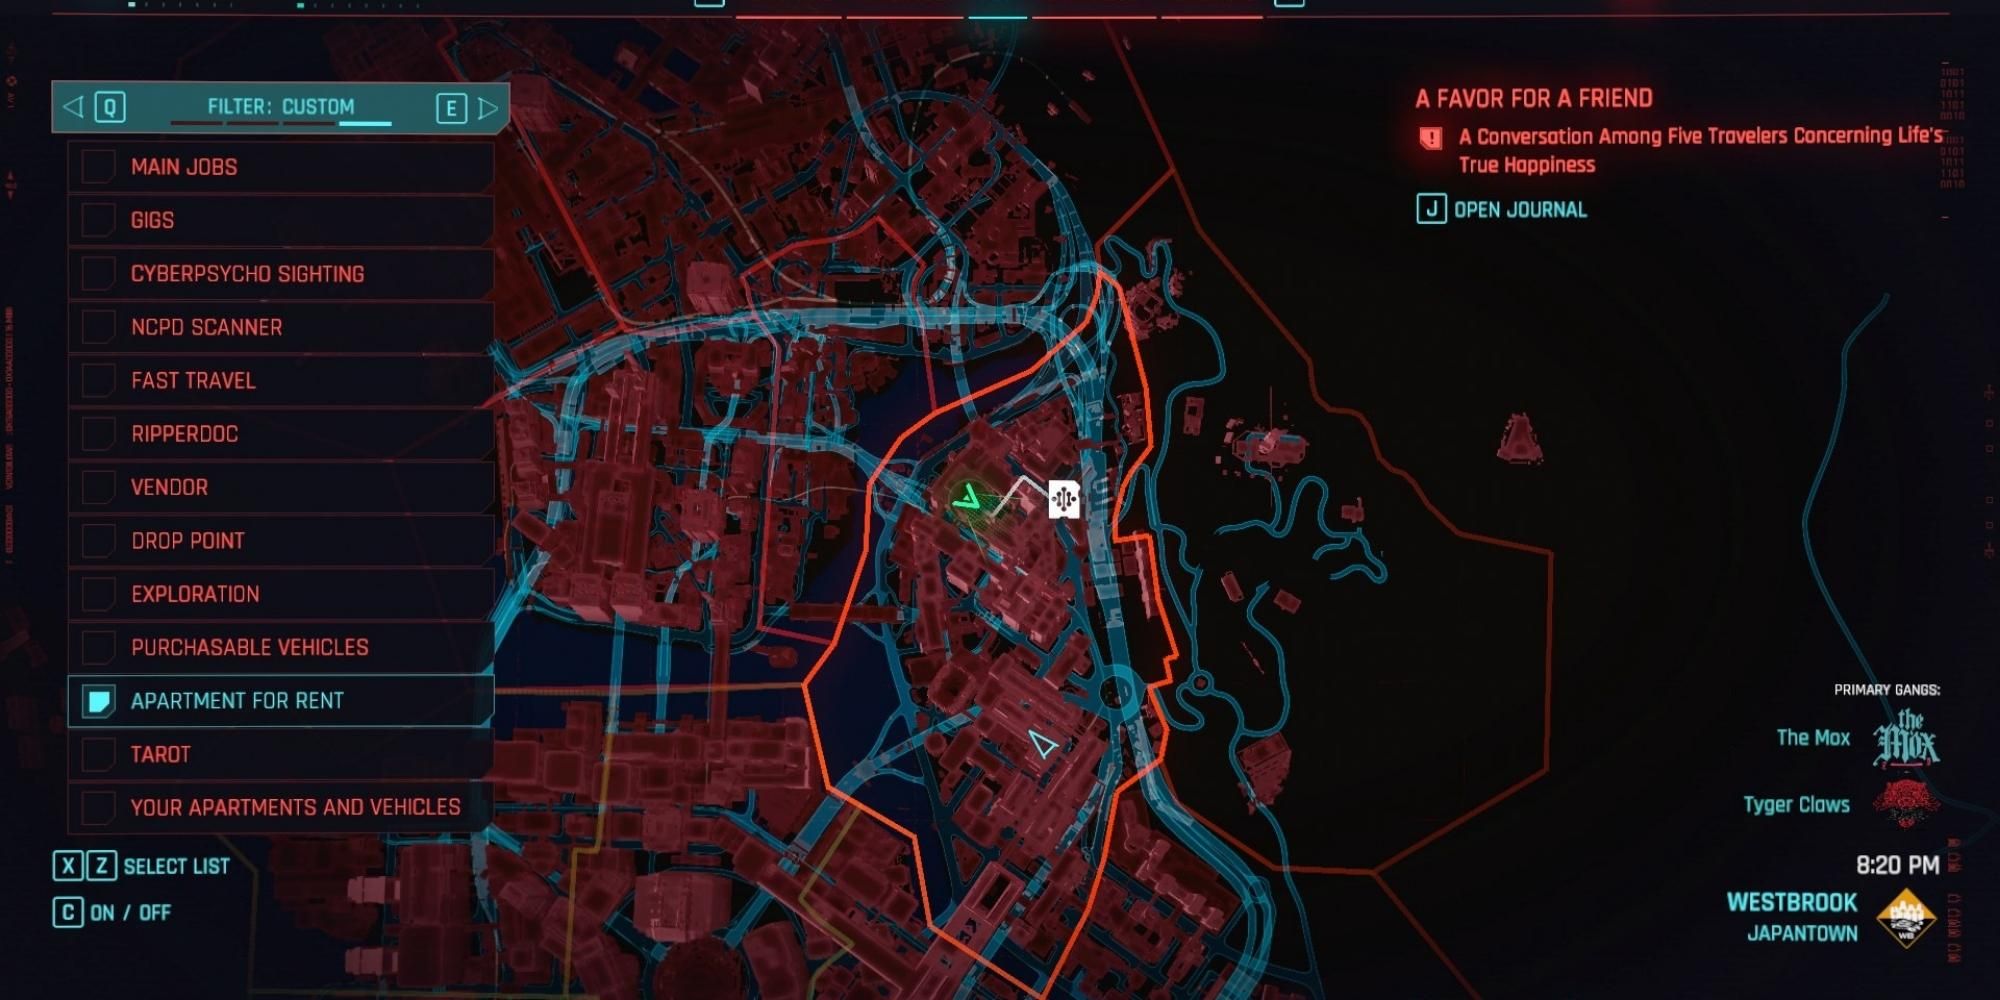 captura de tela do mapa do fornecedor netrunner em Westbrook Japantown, localização em Cyberpunk 2077